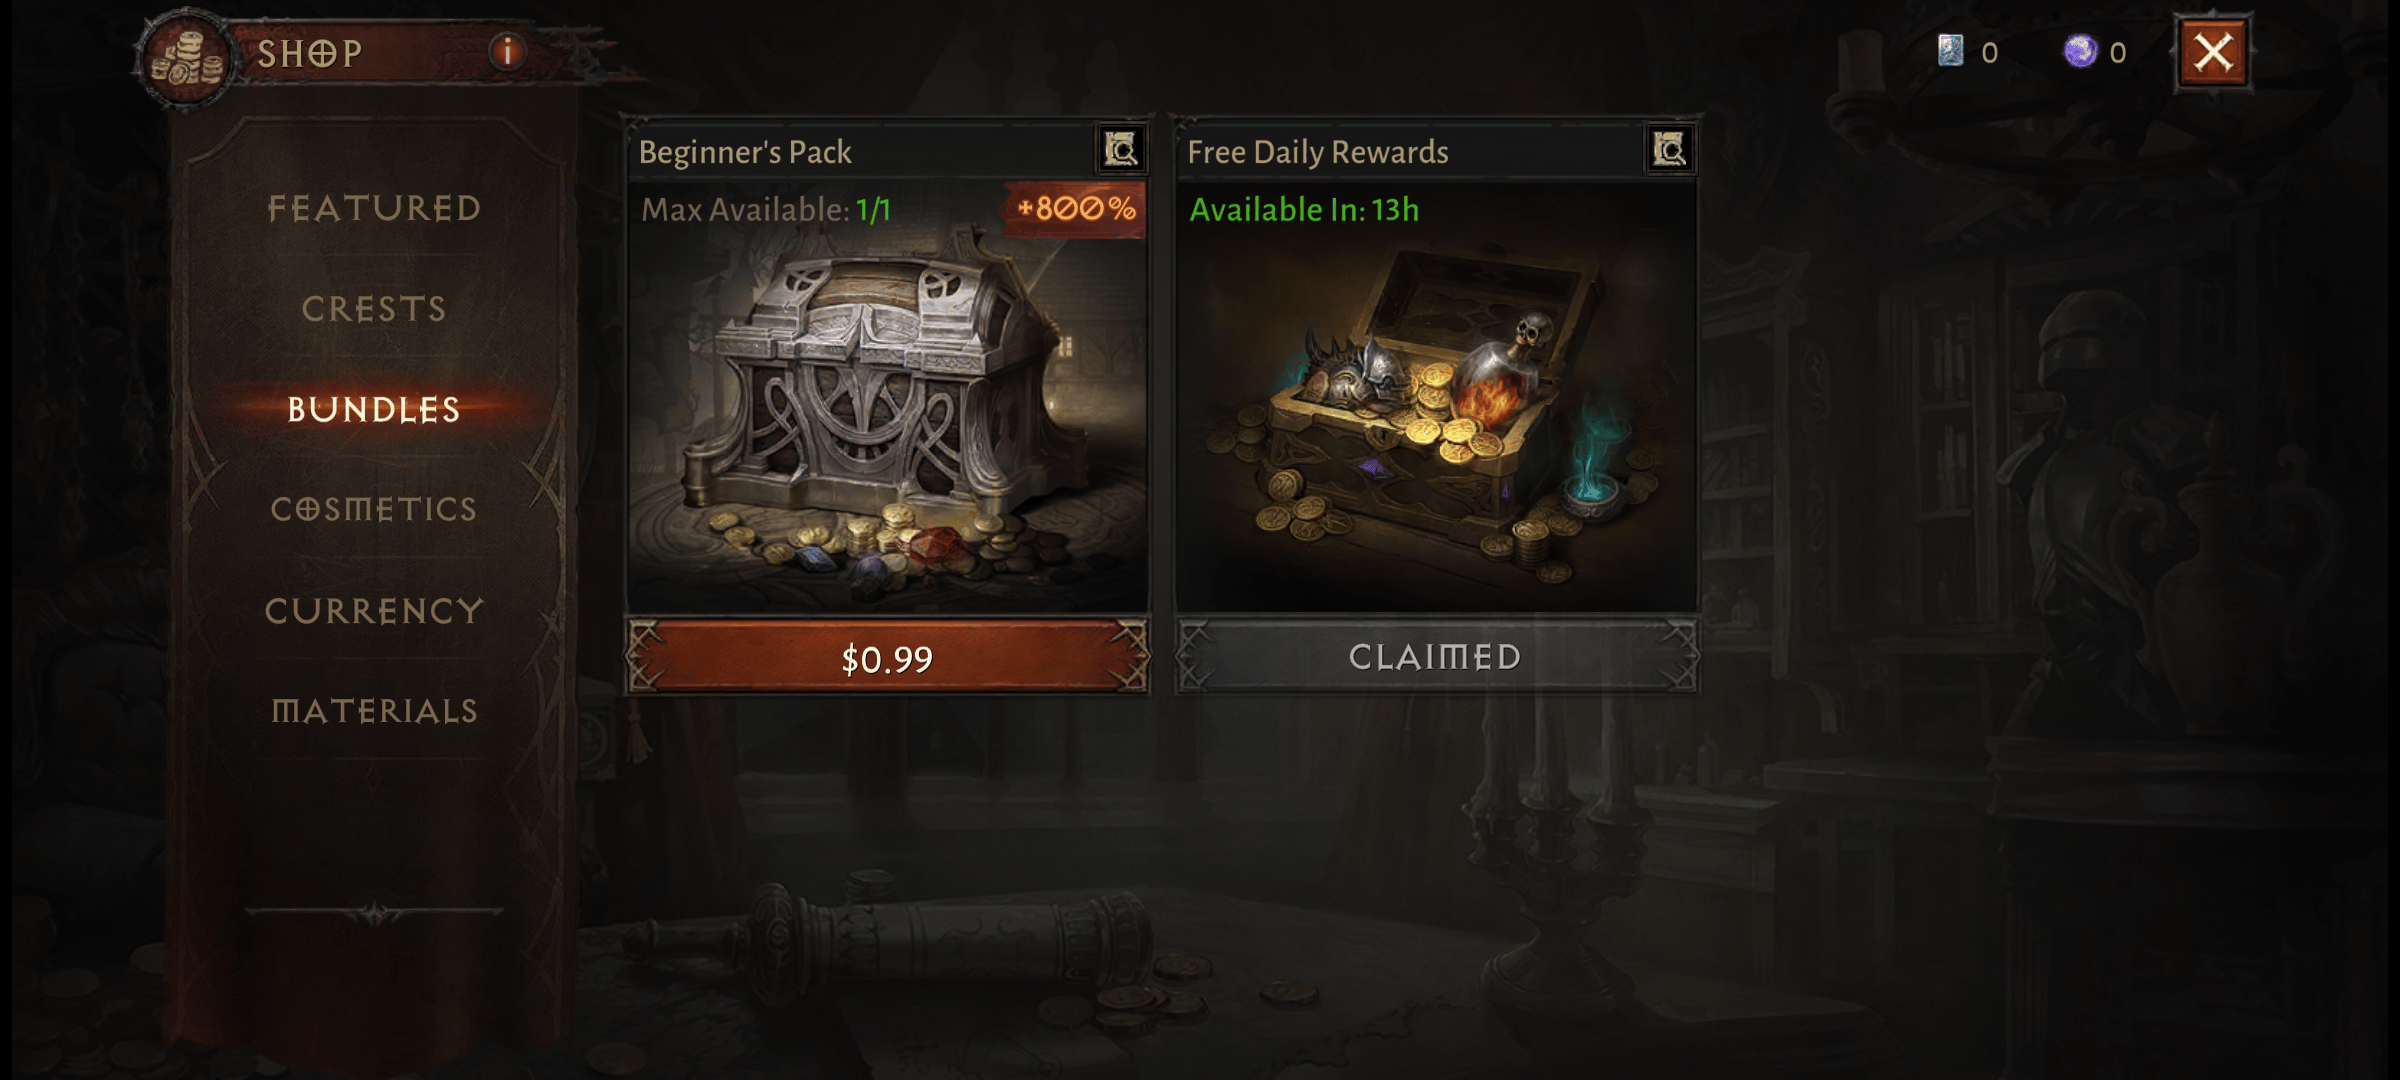 Free Shop Rewards, Diablo Immortal Free Rewards